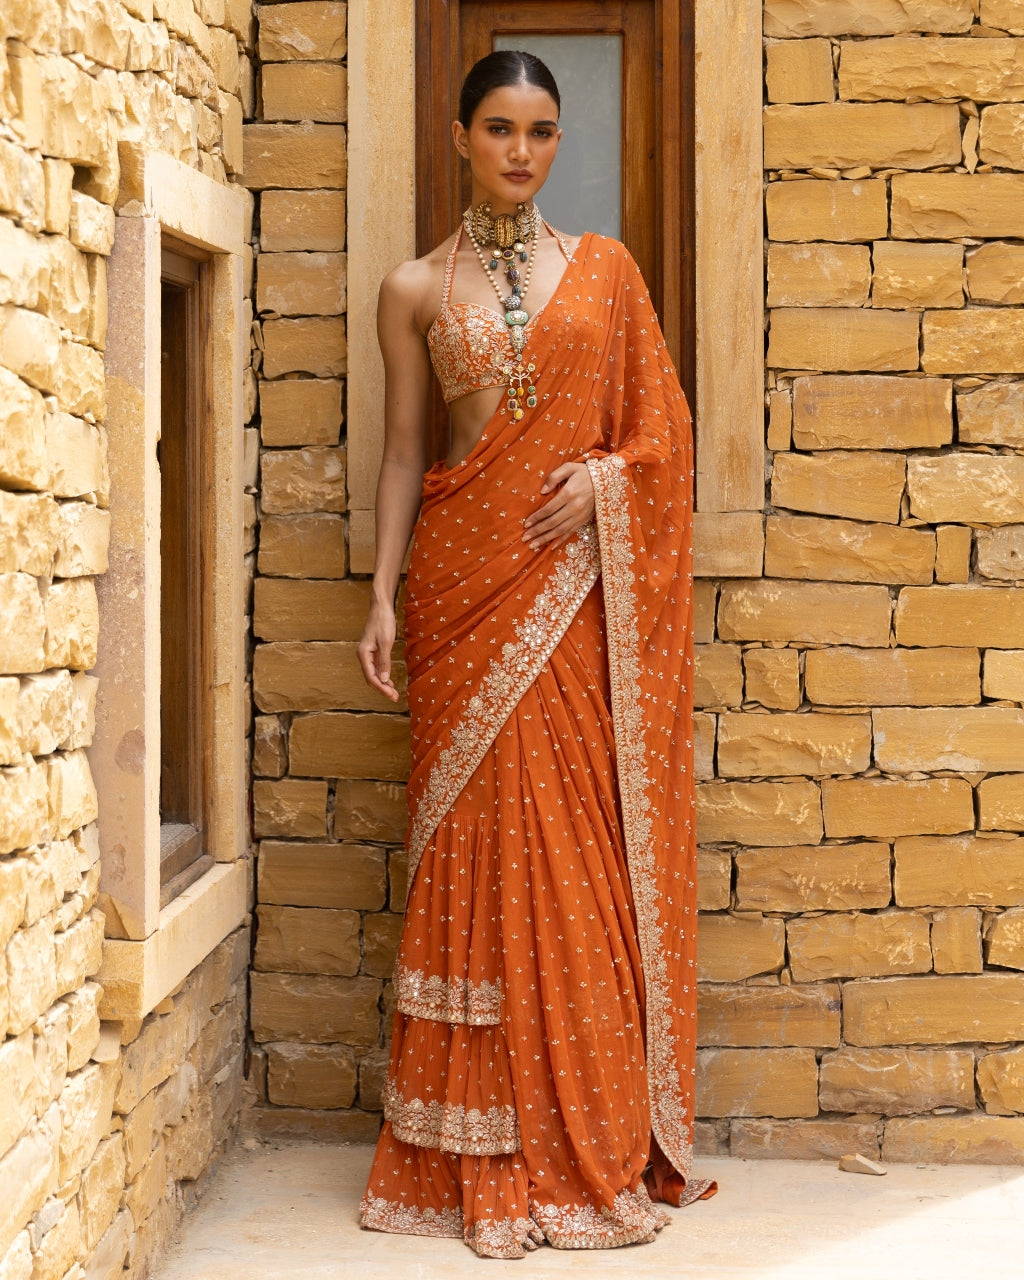 Toasted Orange Embroidered Tiered Sari Set